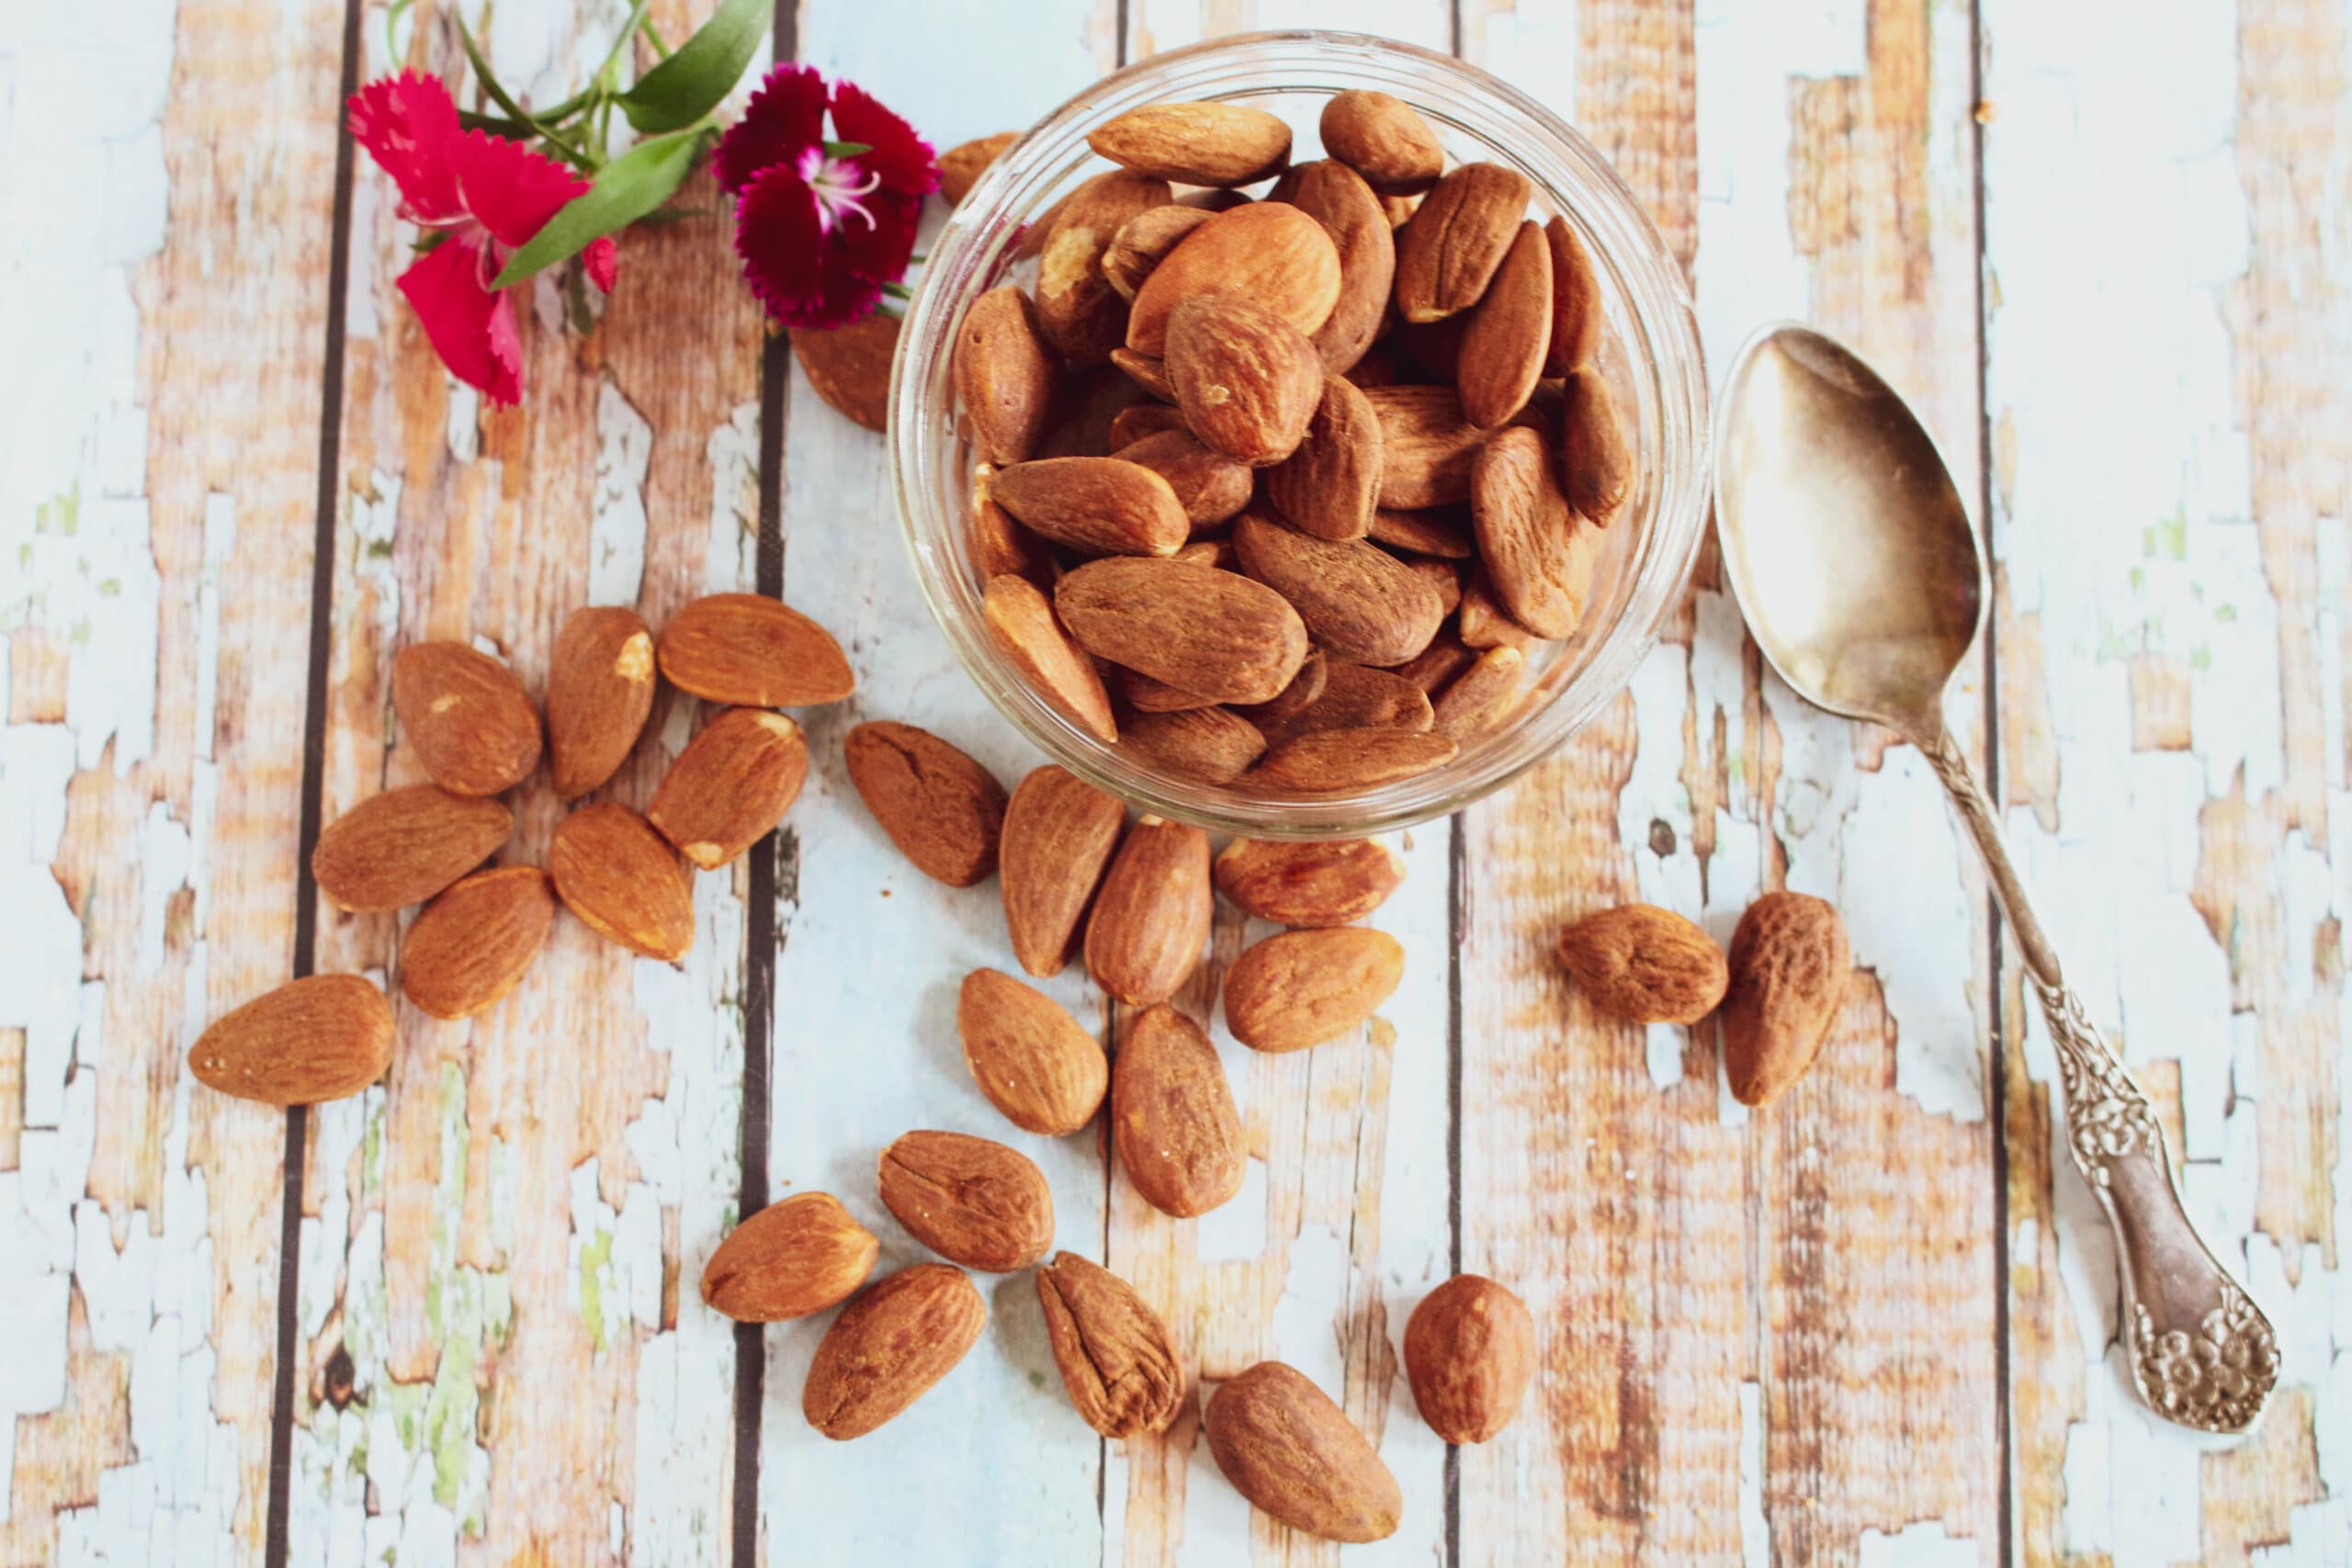 Natural Premium Whole Almonds / Gota Almonds Badam / Premium Almonds nuts / Whole Natural Badam - 500 Grams 